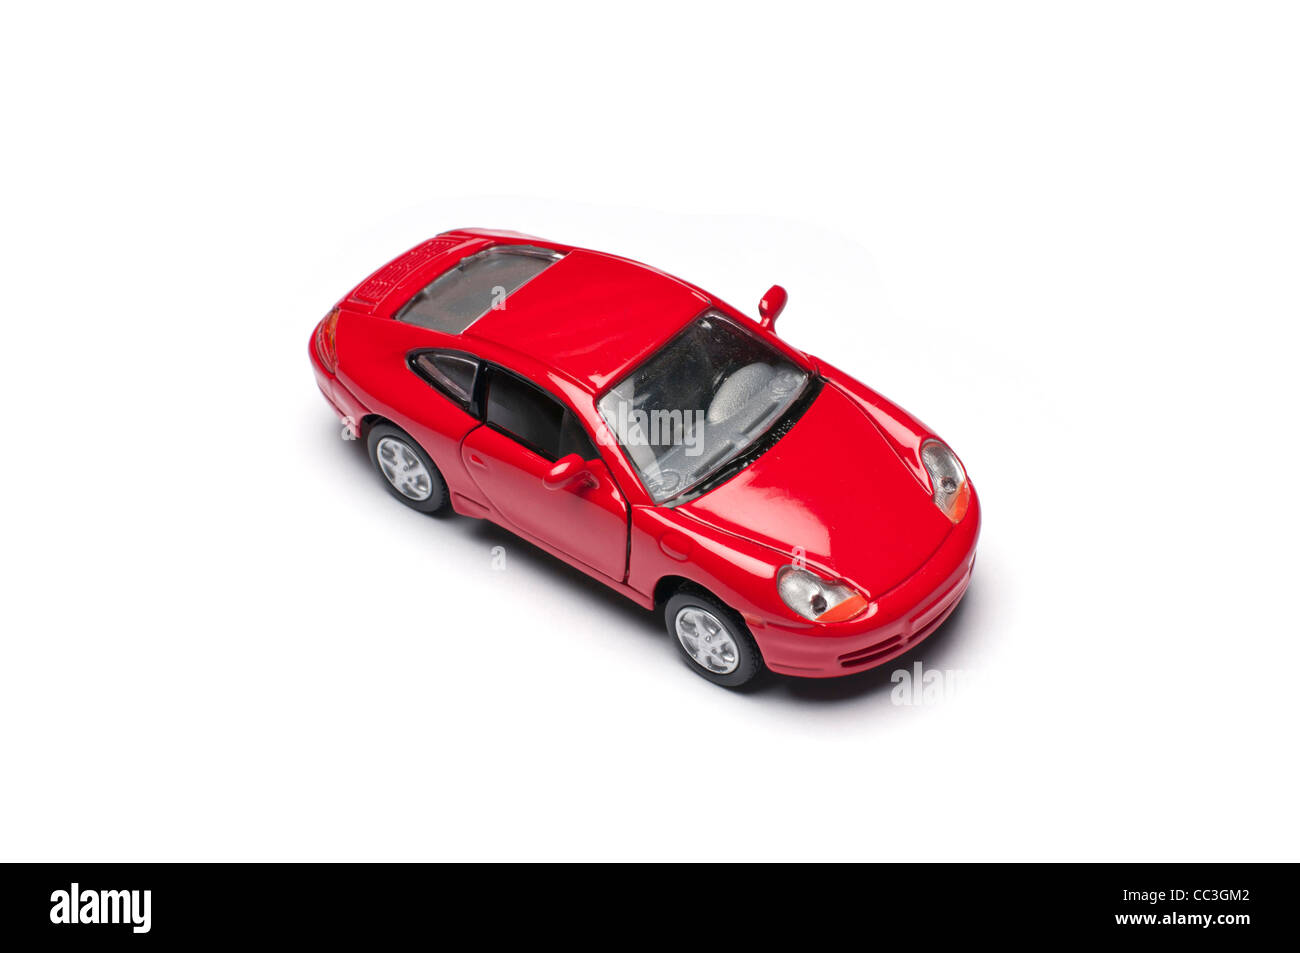 Une voiture de sport jouet rouge Banque D'Images